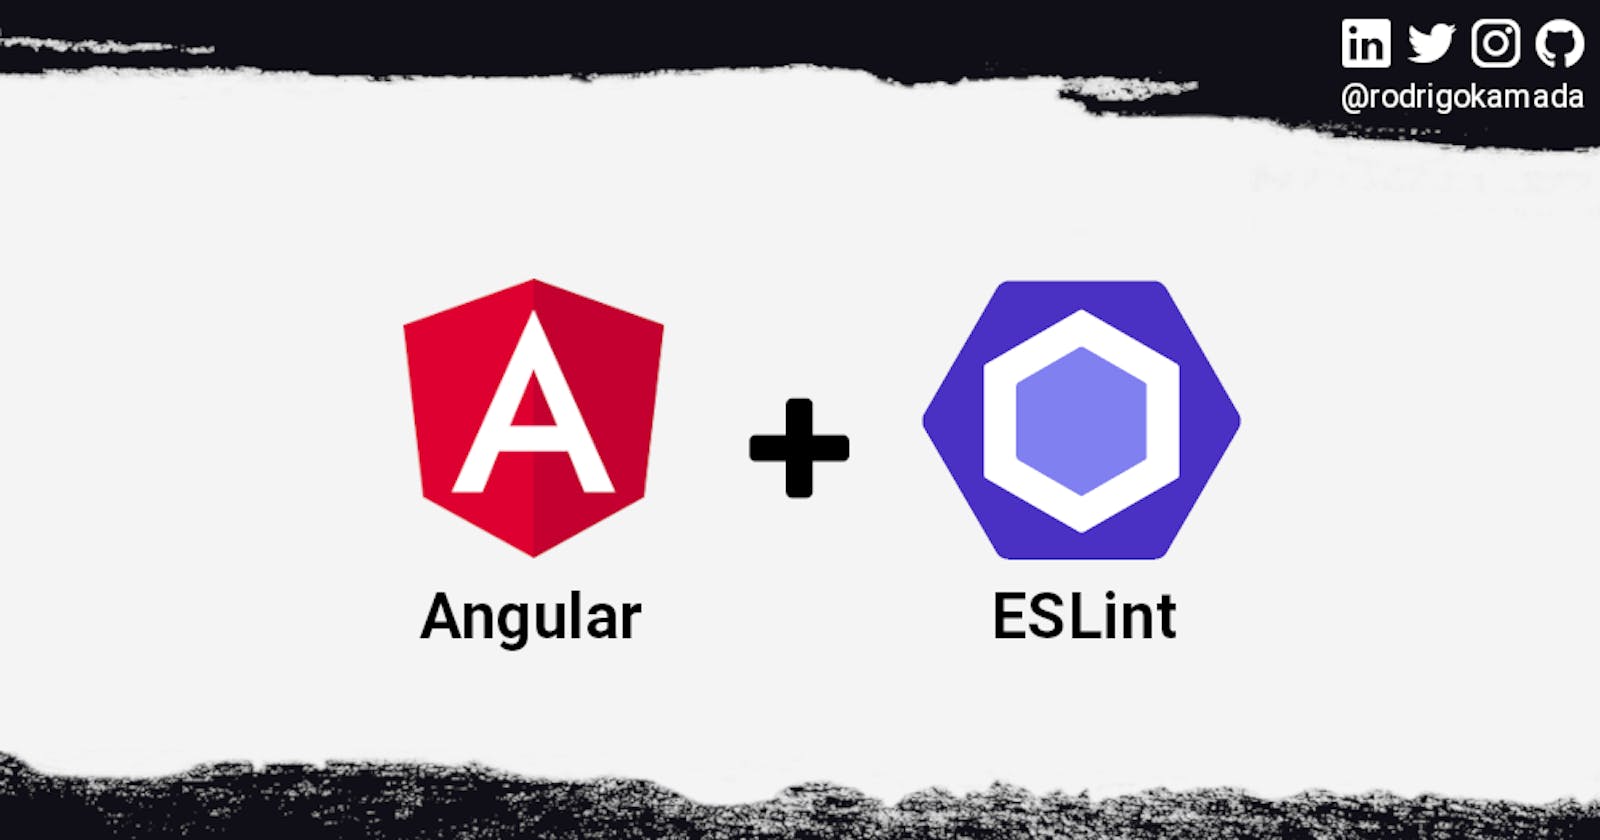 Adding the ESLint to an Angular application